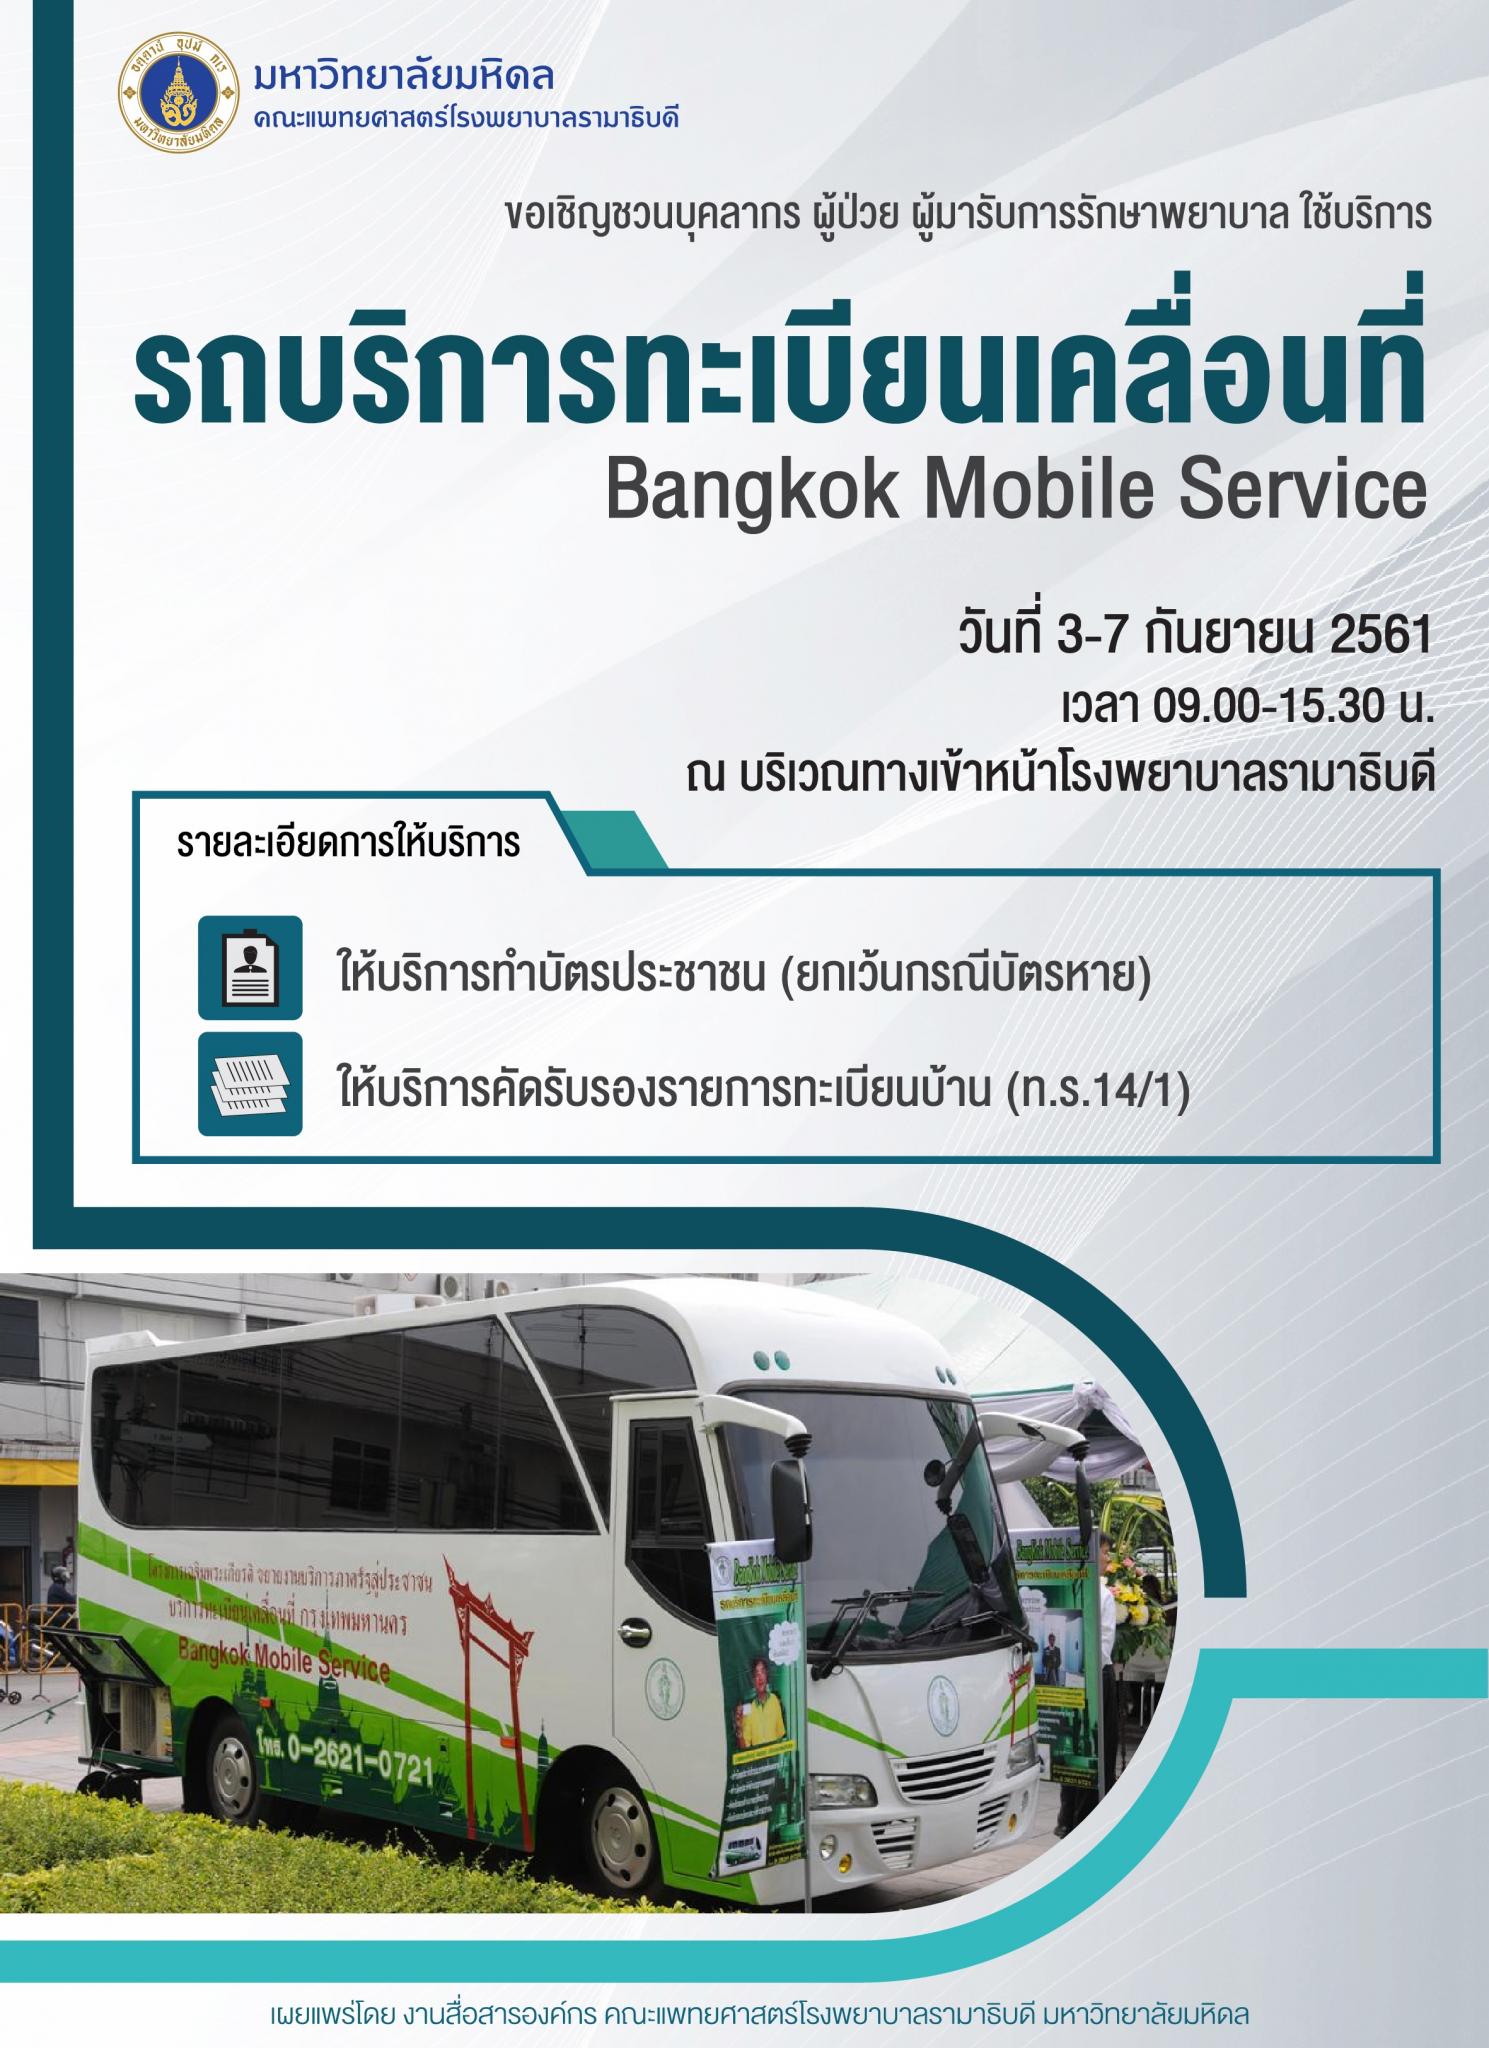 ขอเชิญใช้บริการรถบริการทะเบียนเคลื่อนที่ Bangkok Mobile Service